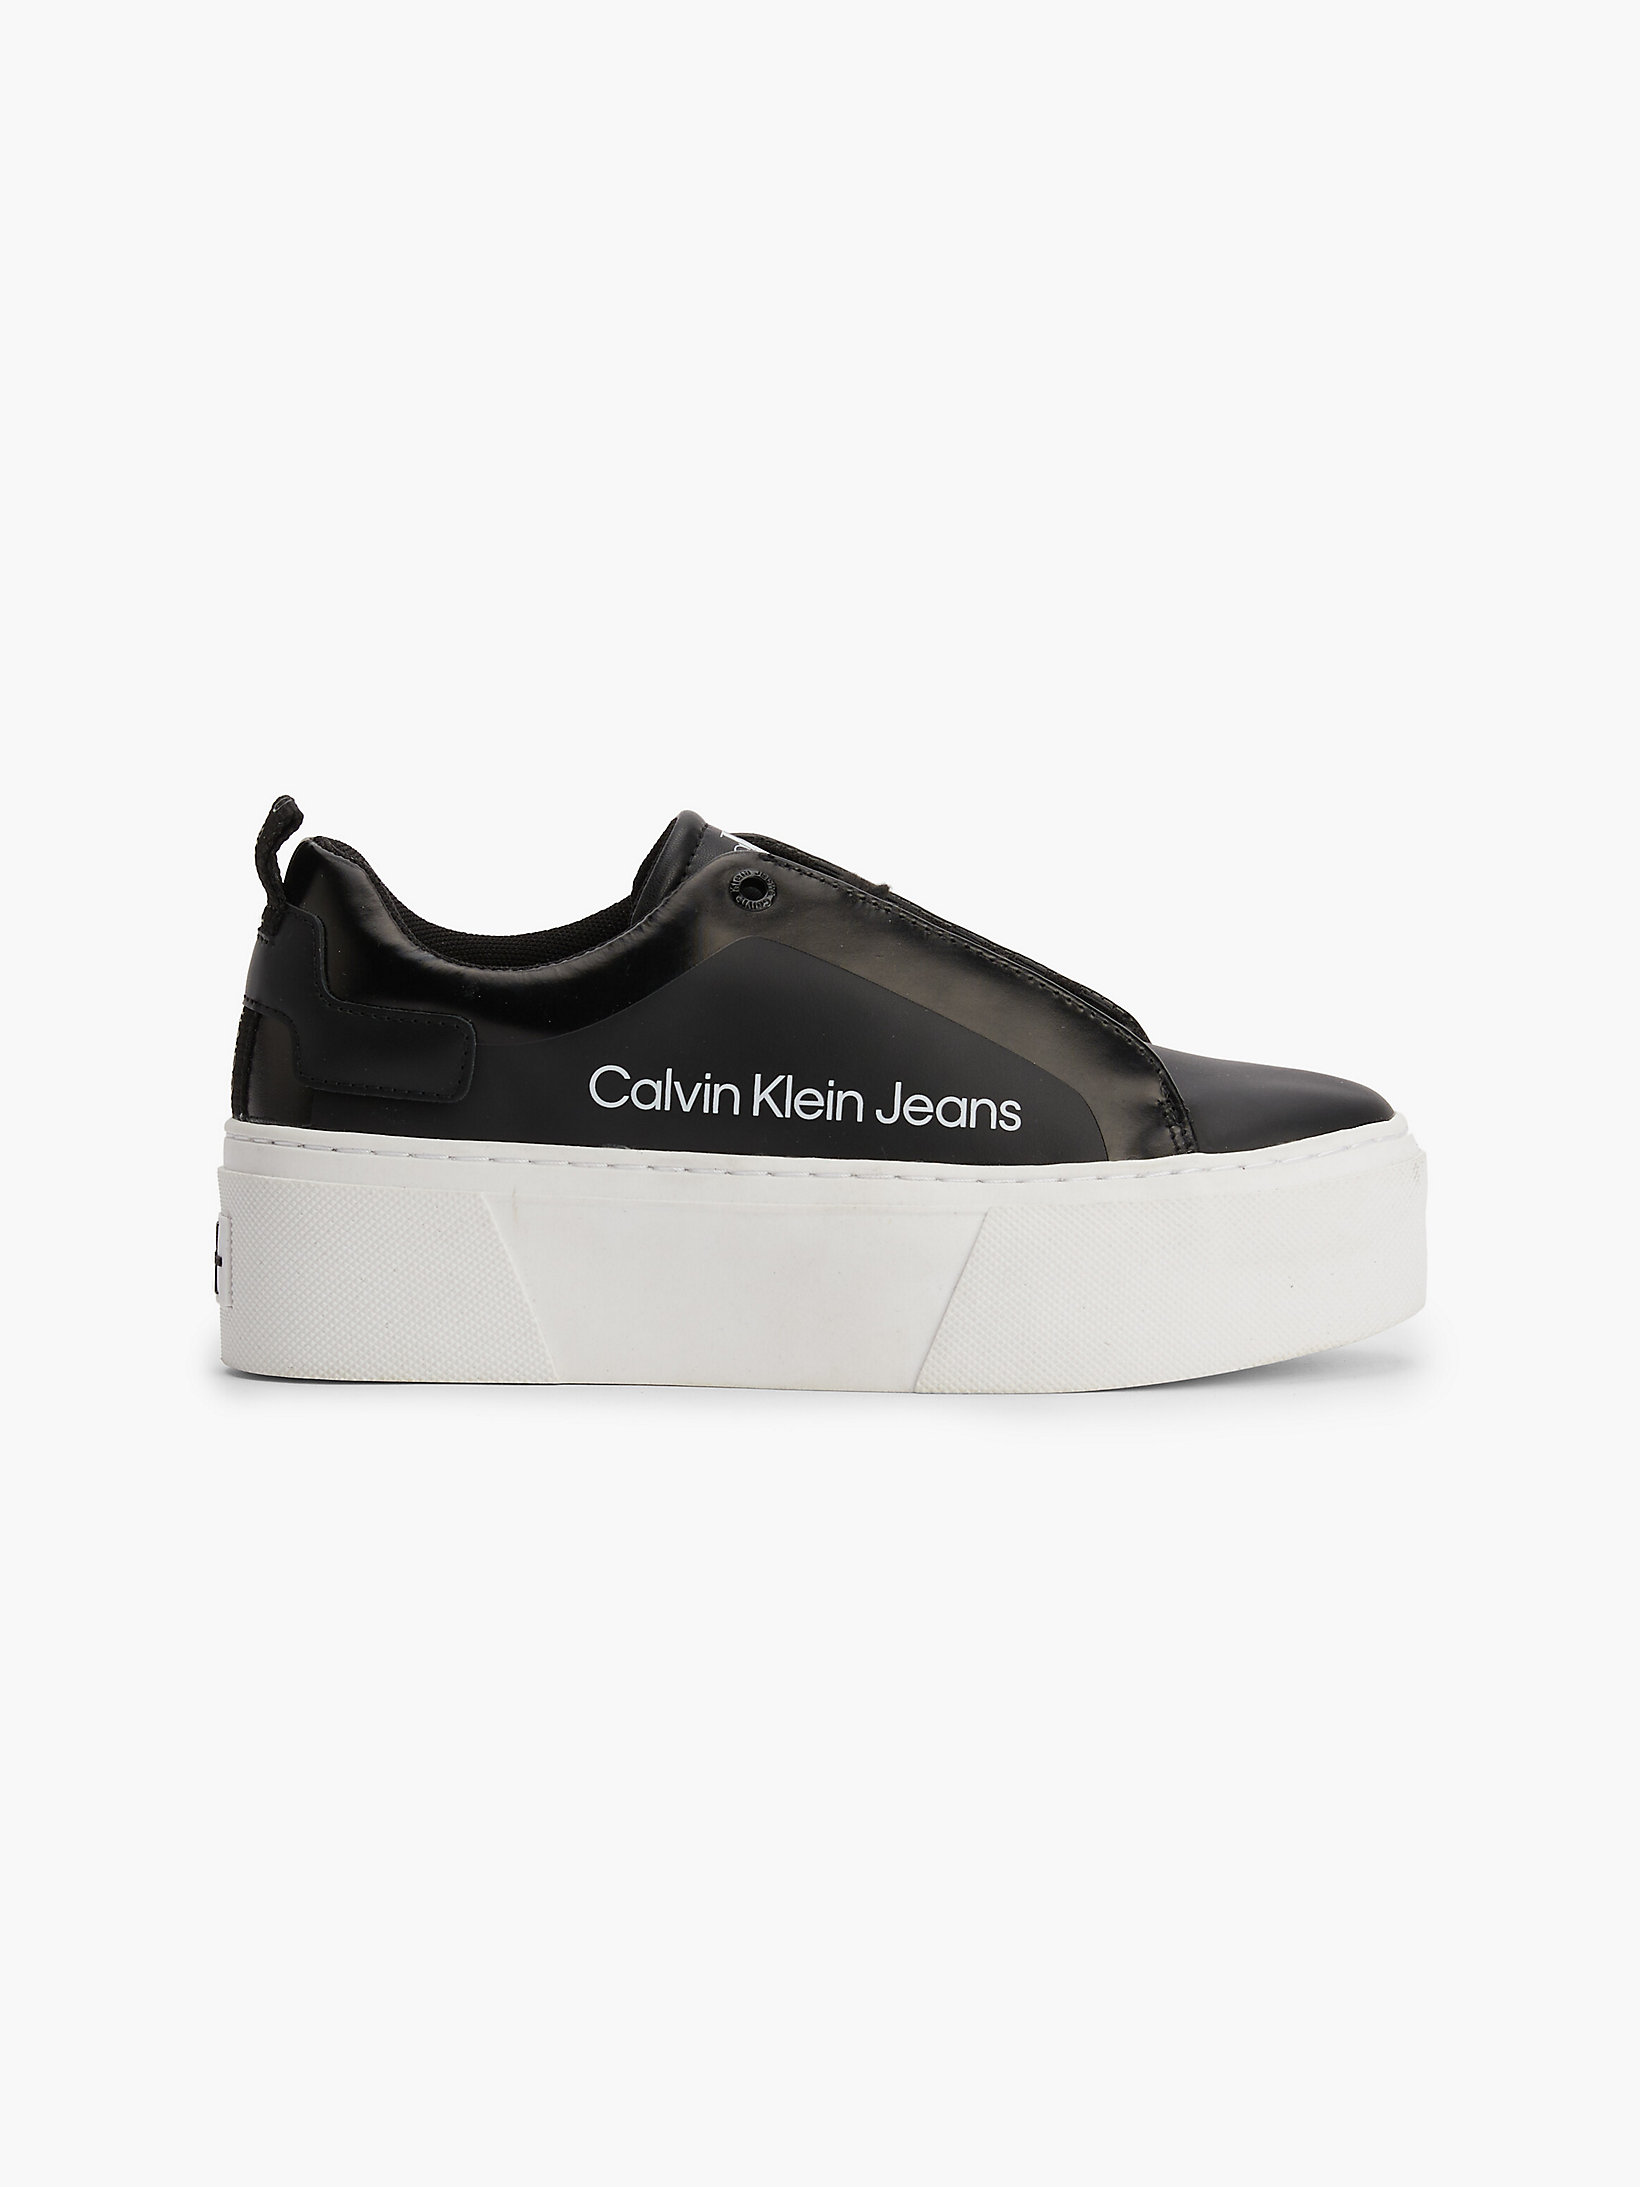 Black Leather Platform Trainers undefined women Calvin Klein